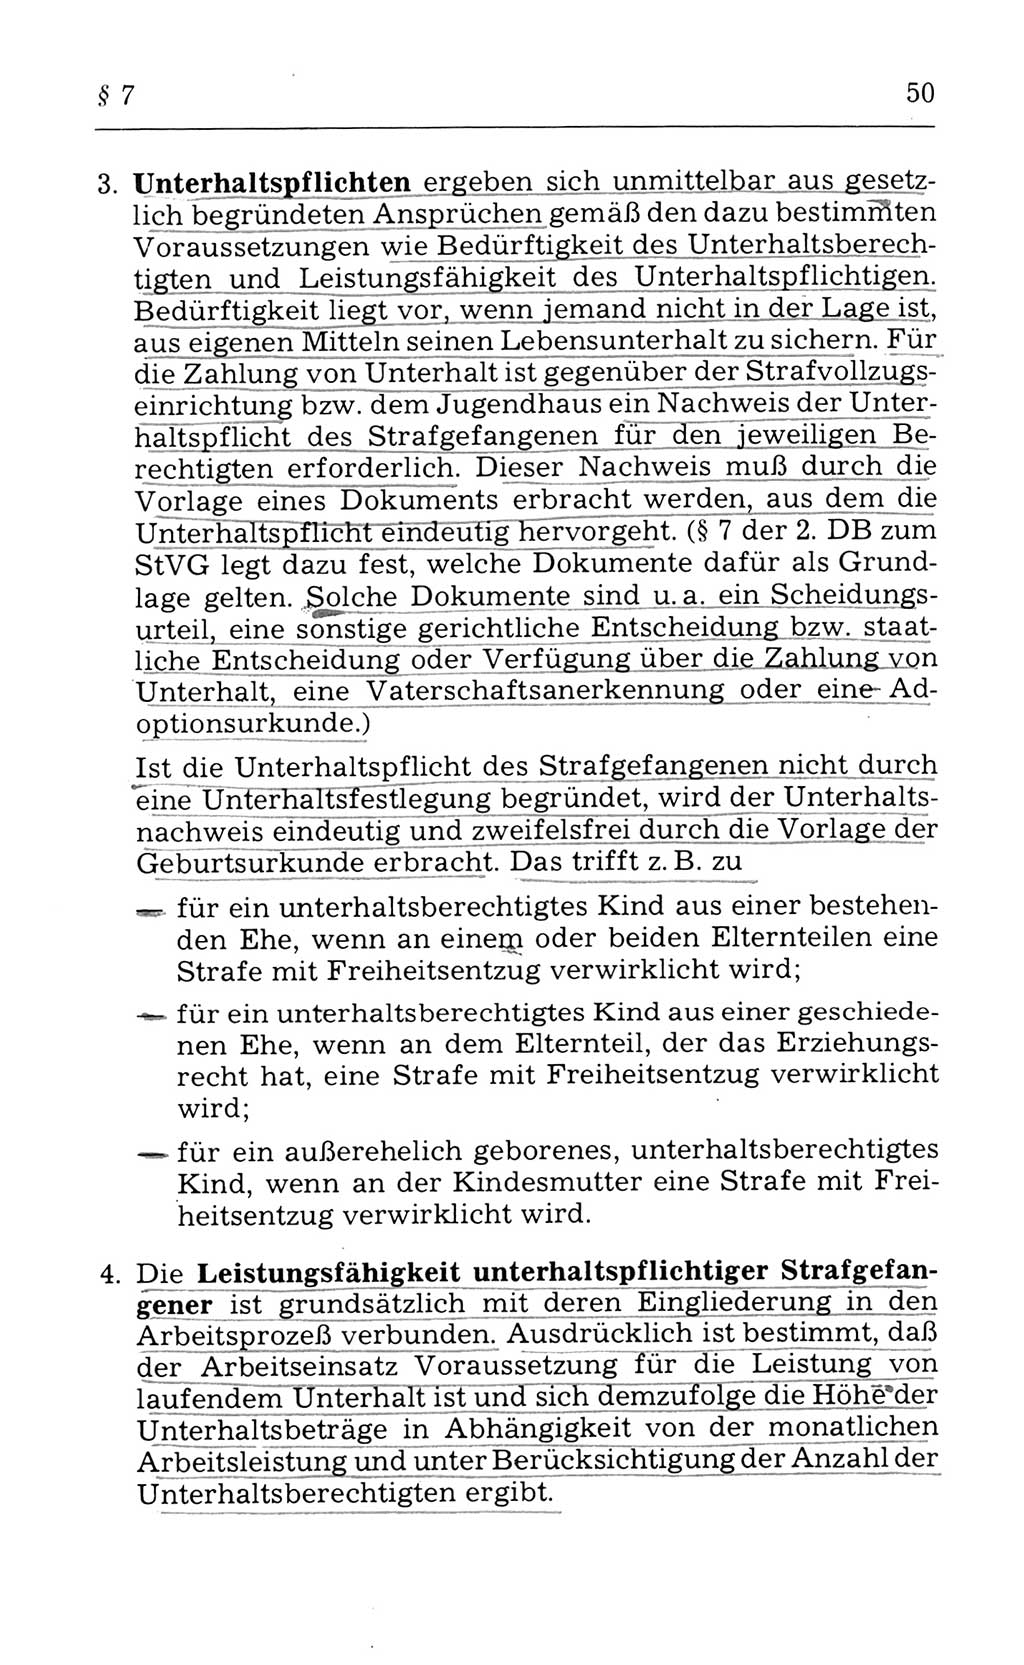 Kommentar zum Strafvollzugsgesetz [(StVG) Deutsche Demokratische Republik (DDR)] 1980, Seite 50 (Komm. StVG DDR 1980, S. 50)